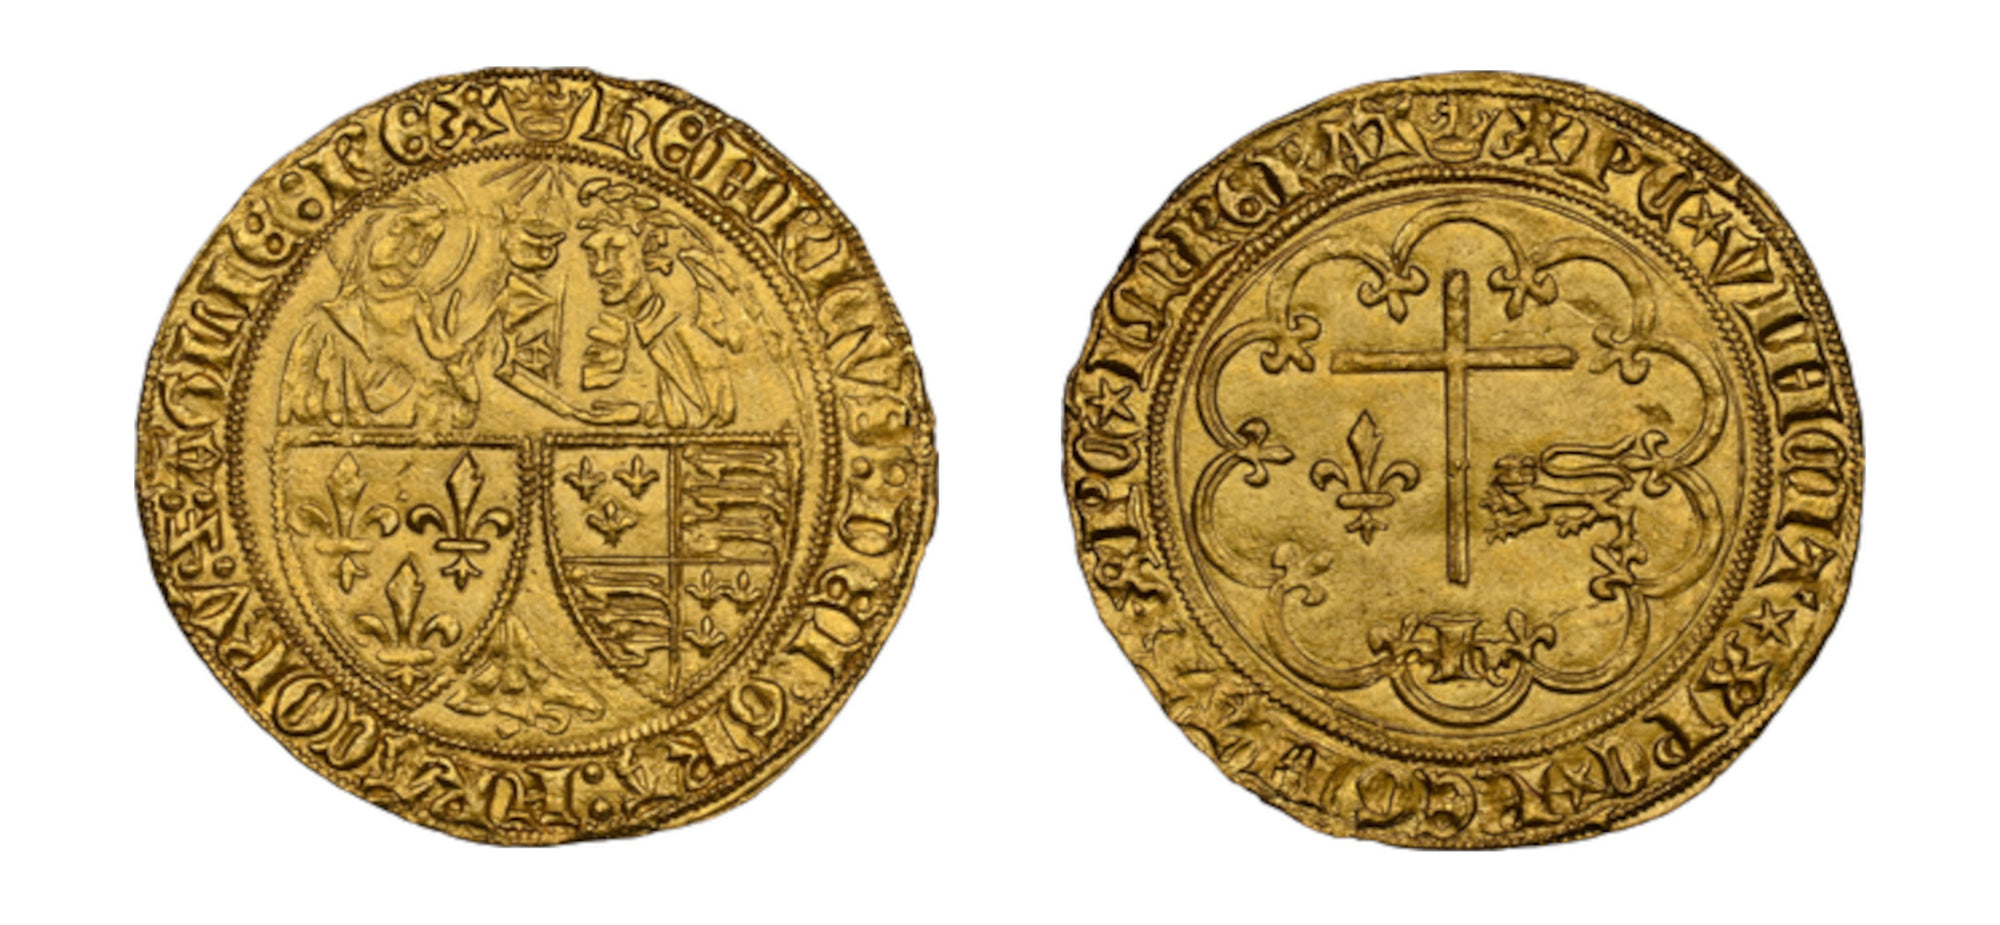 1422-1453 Salut D'OR King Henry VI NGC MS62 - Hard Asset Management, Inc